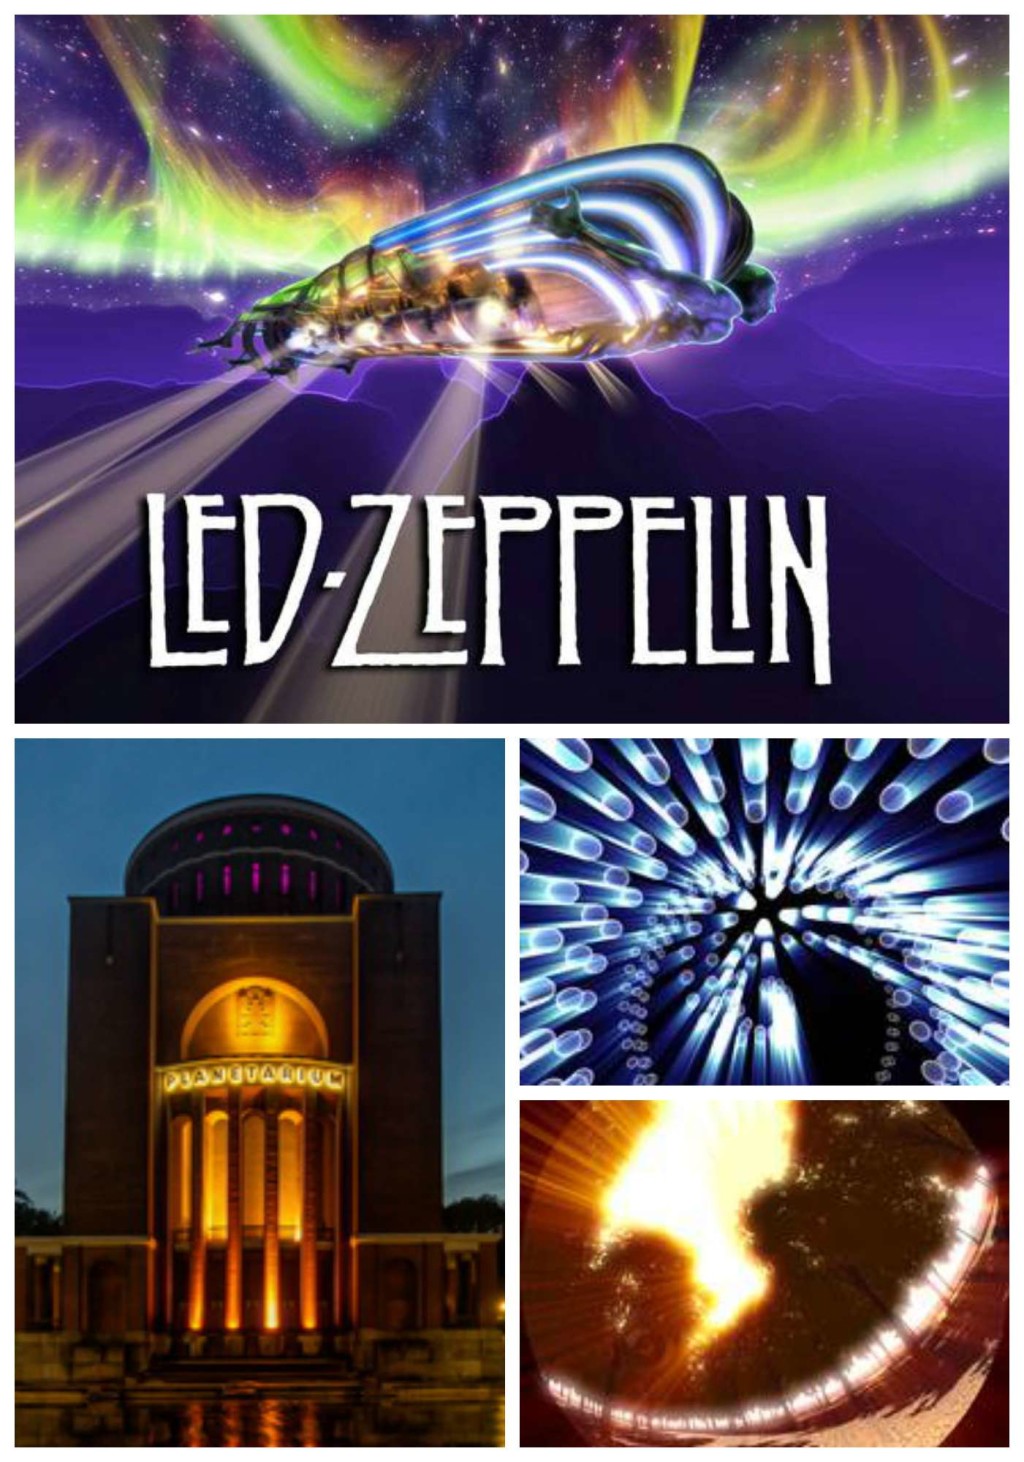 Sterne fliegen über den Himmel, Musik ertönt von allen Seite, währen ihr entspannt zurückgelehnt das Spektakel beobachtet. Die neue Laser-Rockshow mit dem Sound von Led Zeppelin verwandelt das Planetarium in eine kosmische Hard Rock Arena. Eine 360-Grad Laser-, Sternen- und Lightshow inklusive Surround Sound.